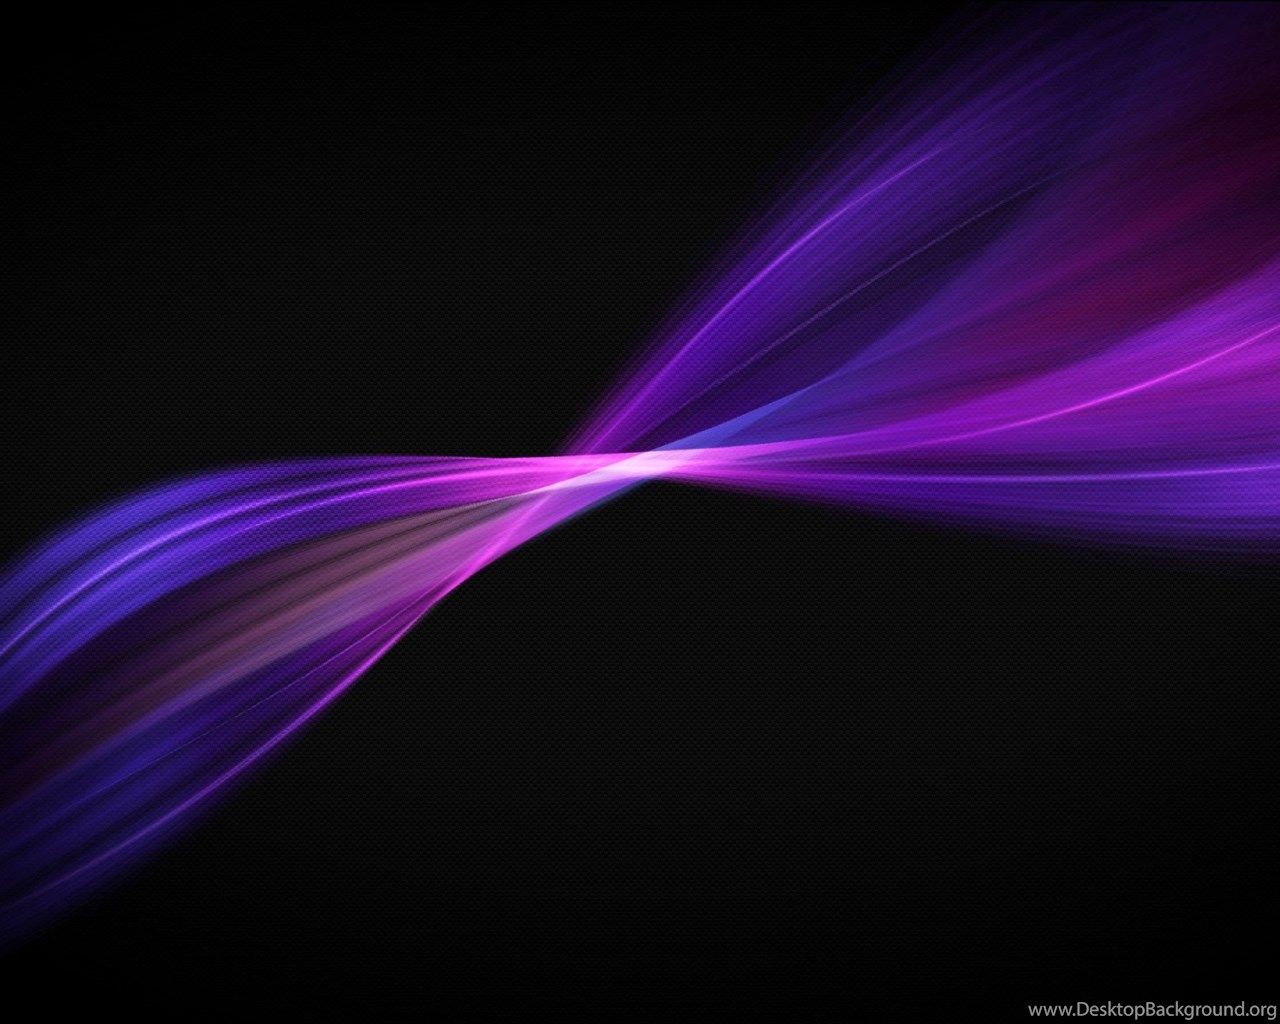 Download Dark Violet Wallpaper 8327 2560x1440 Px High Resolution. Desktop Background